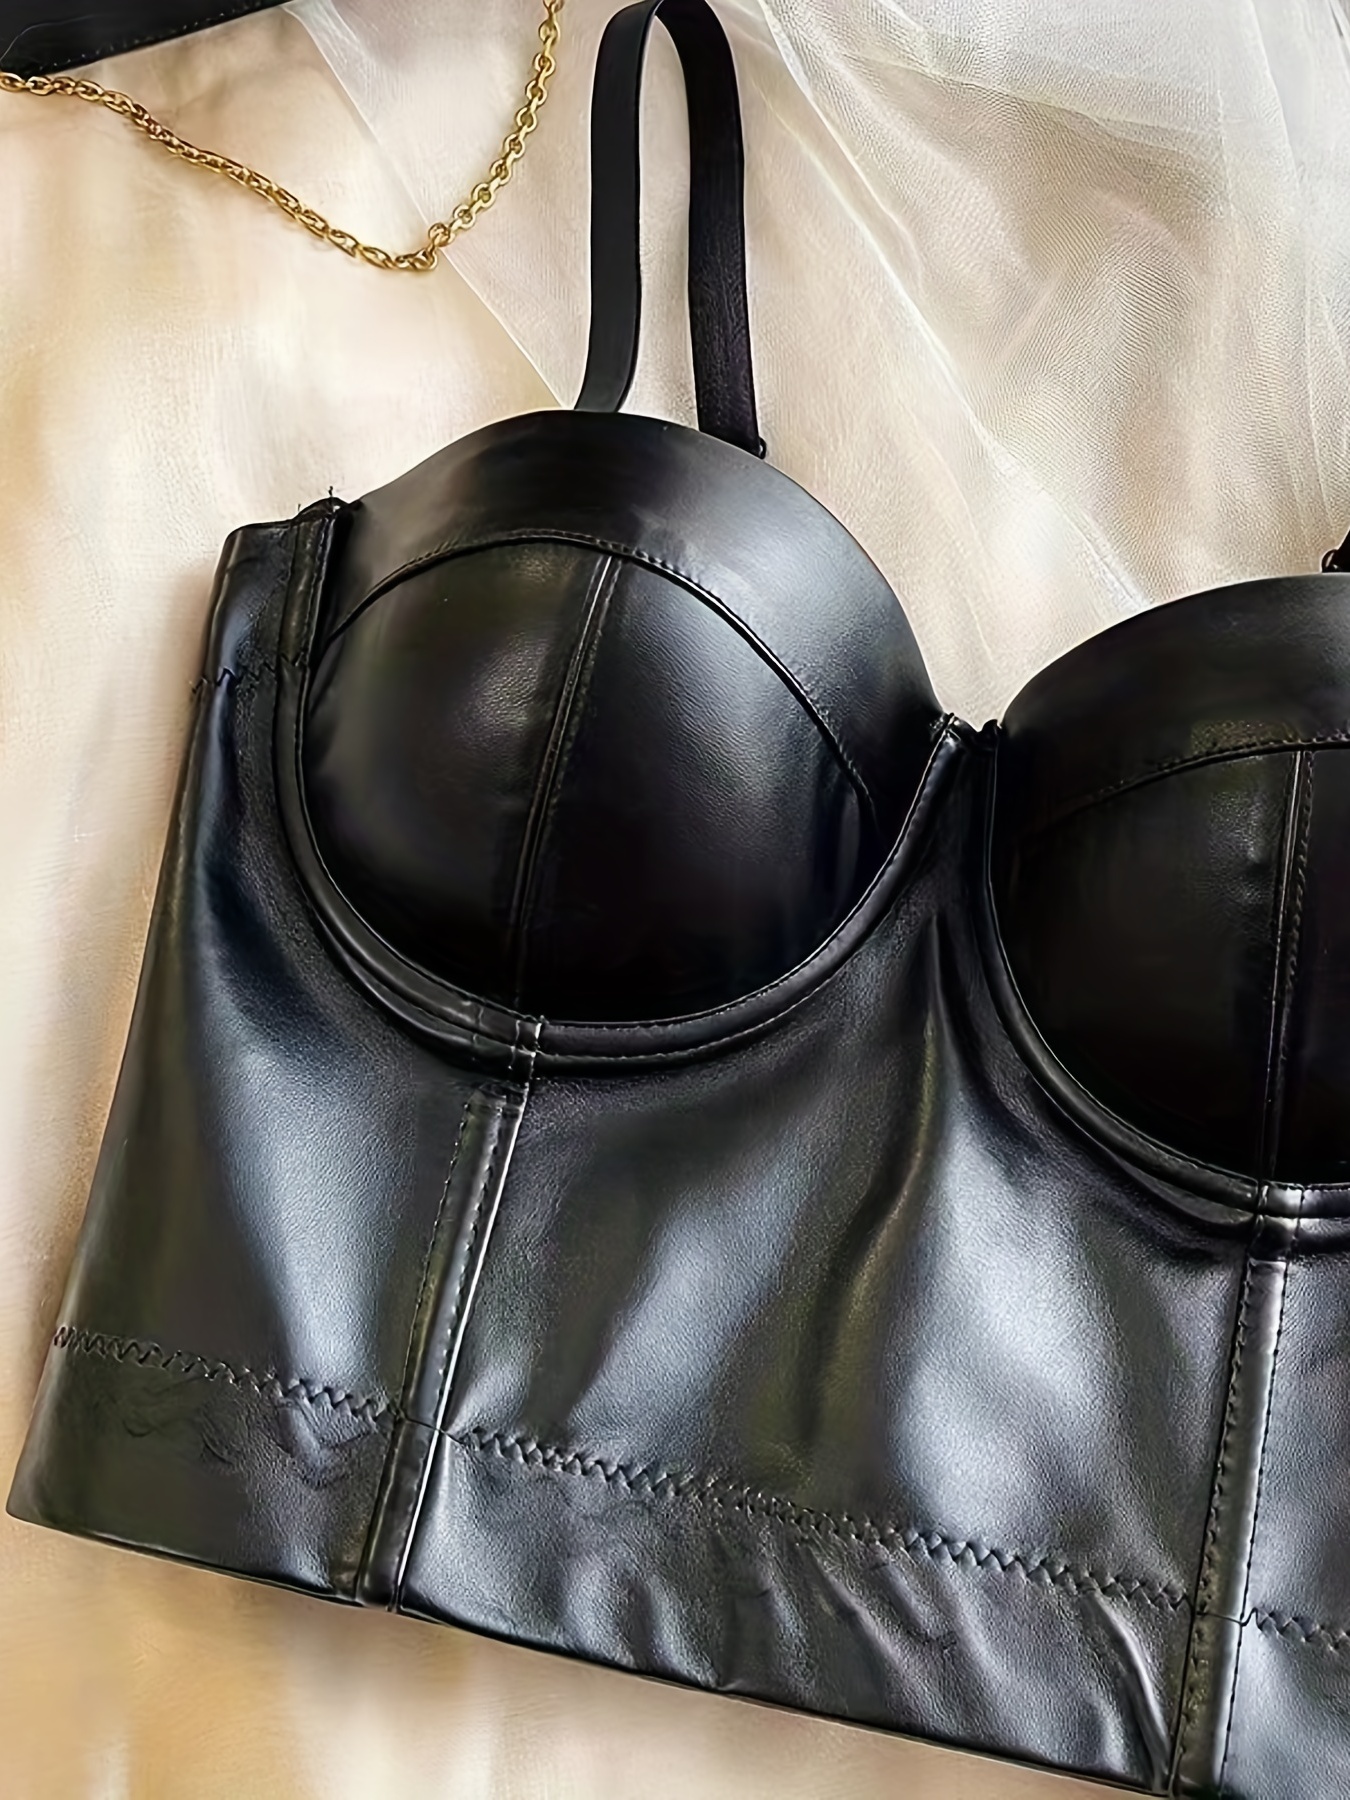 Women's Black Leather Bras